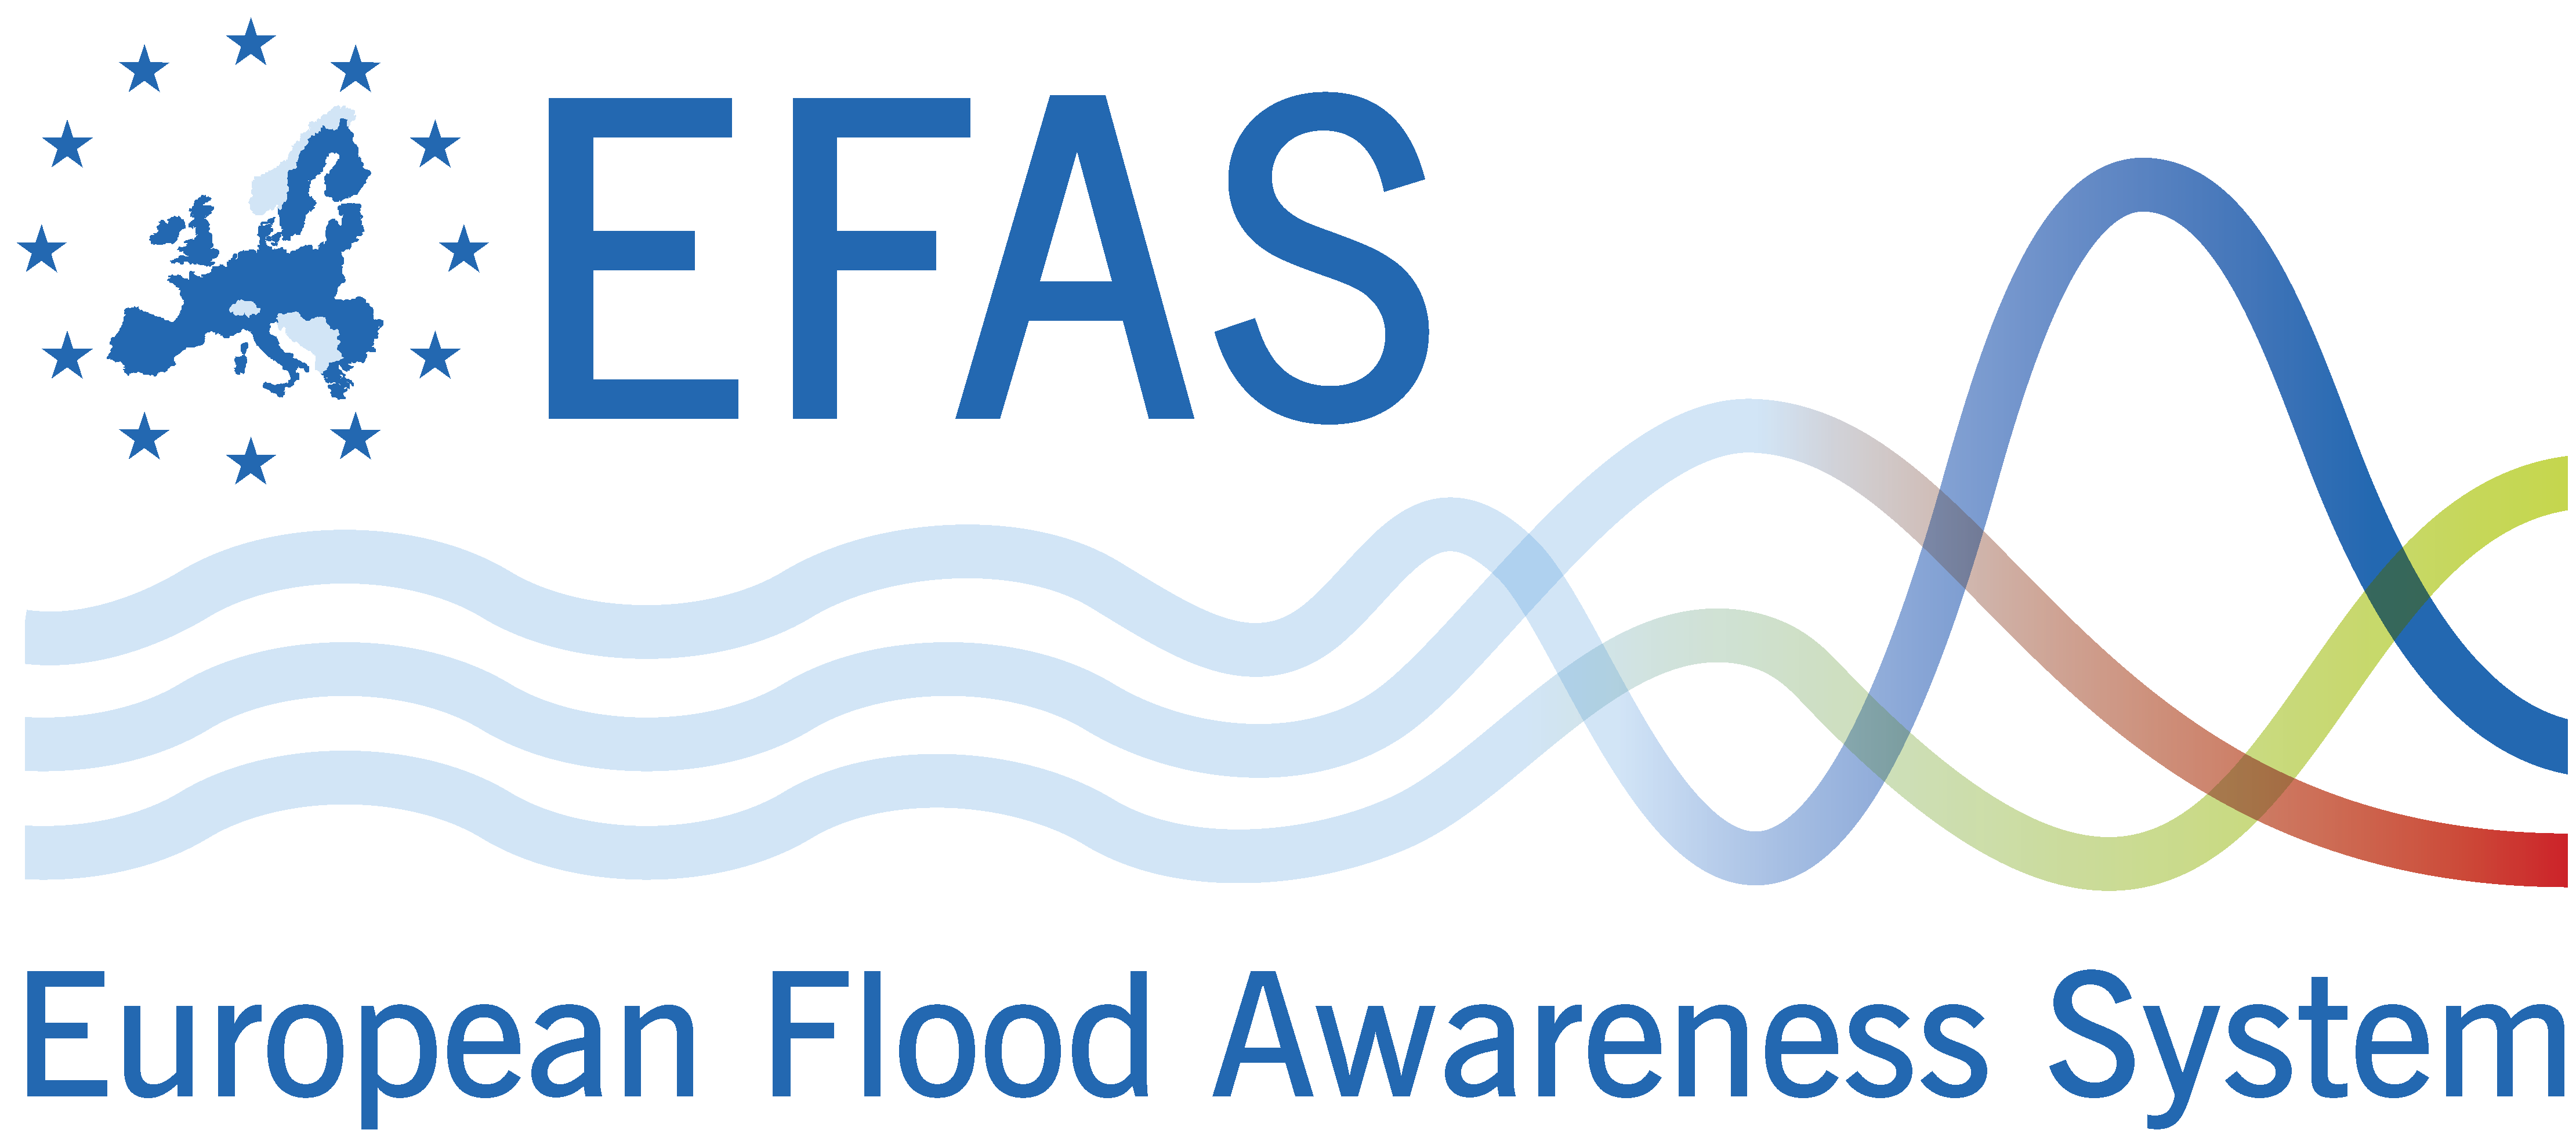 EFAS logo 2014